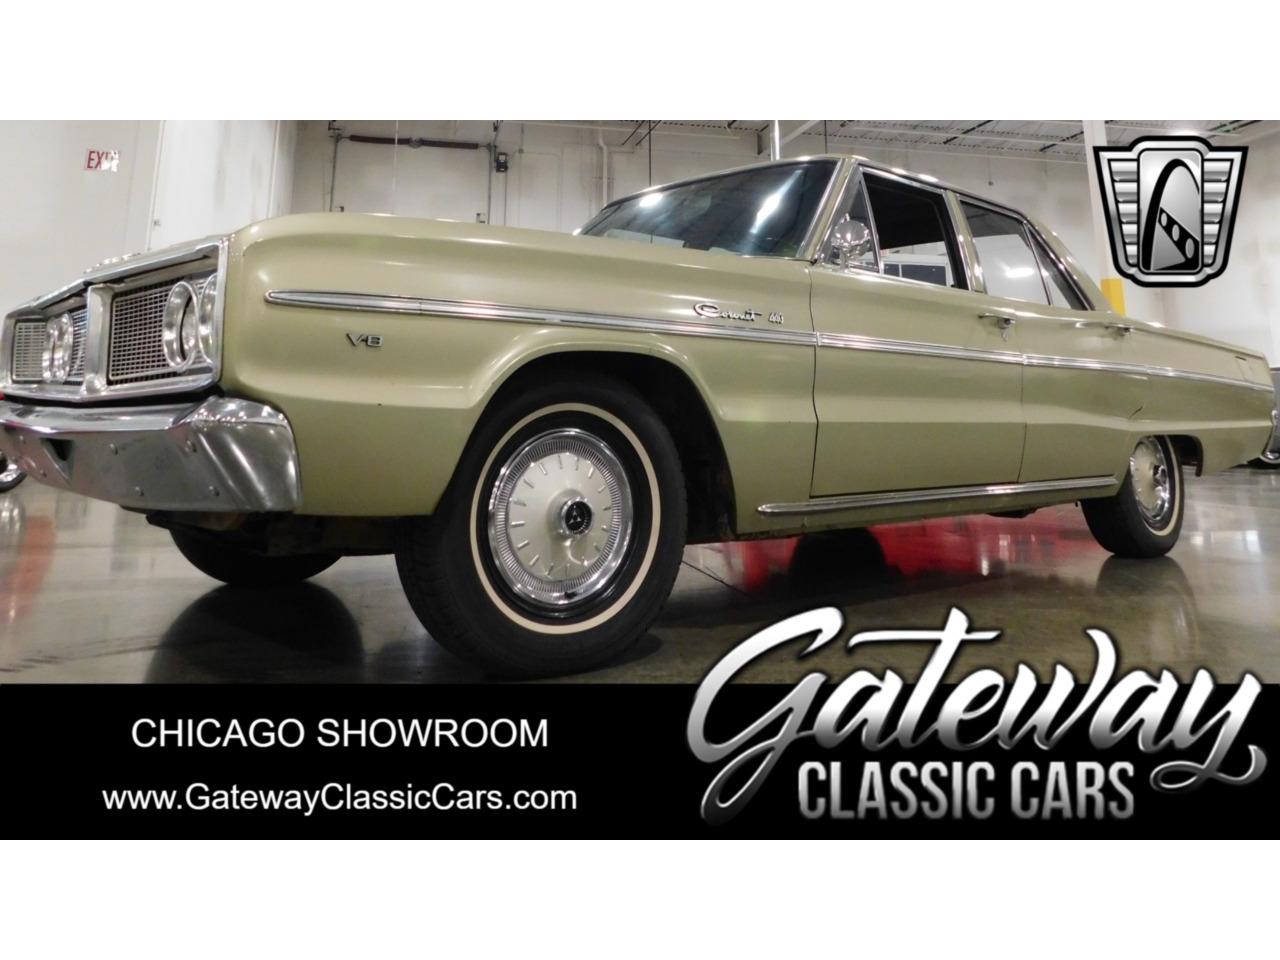 For Sale: 1966 Dodge Coronet in O'Fallon, Illinois for sale in O Fallon, IL